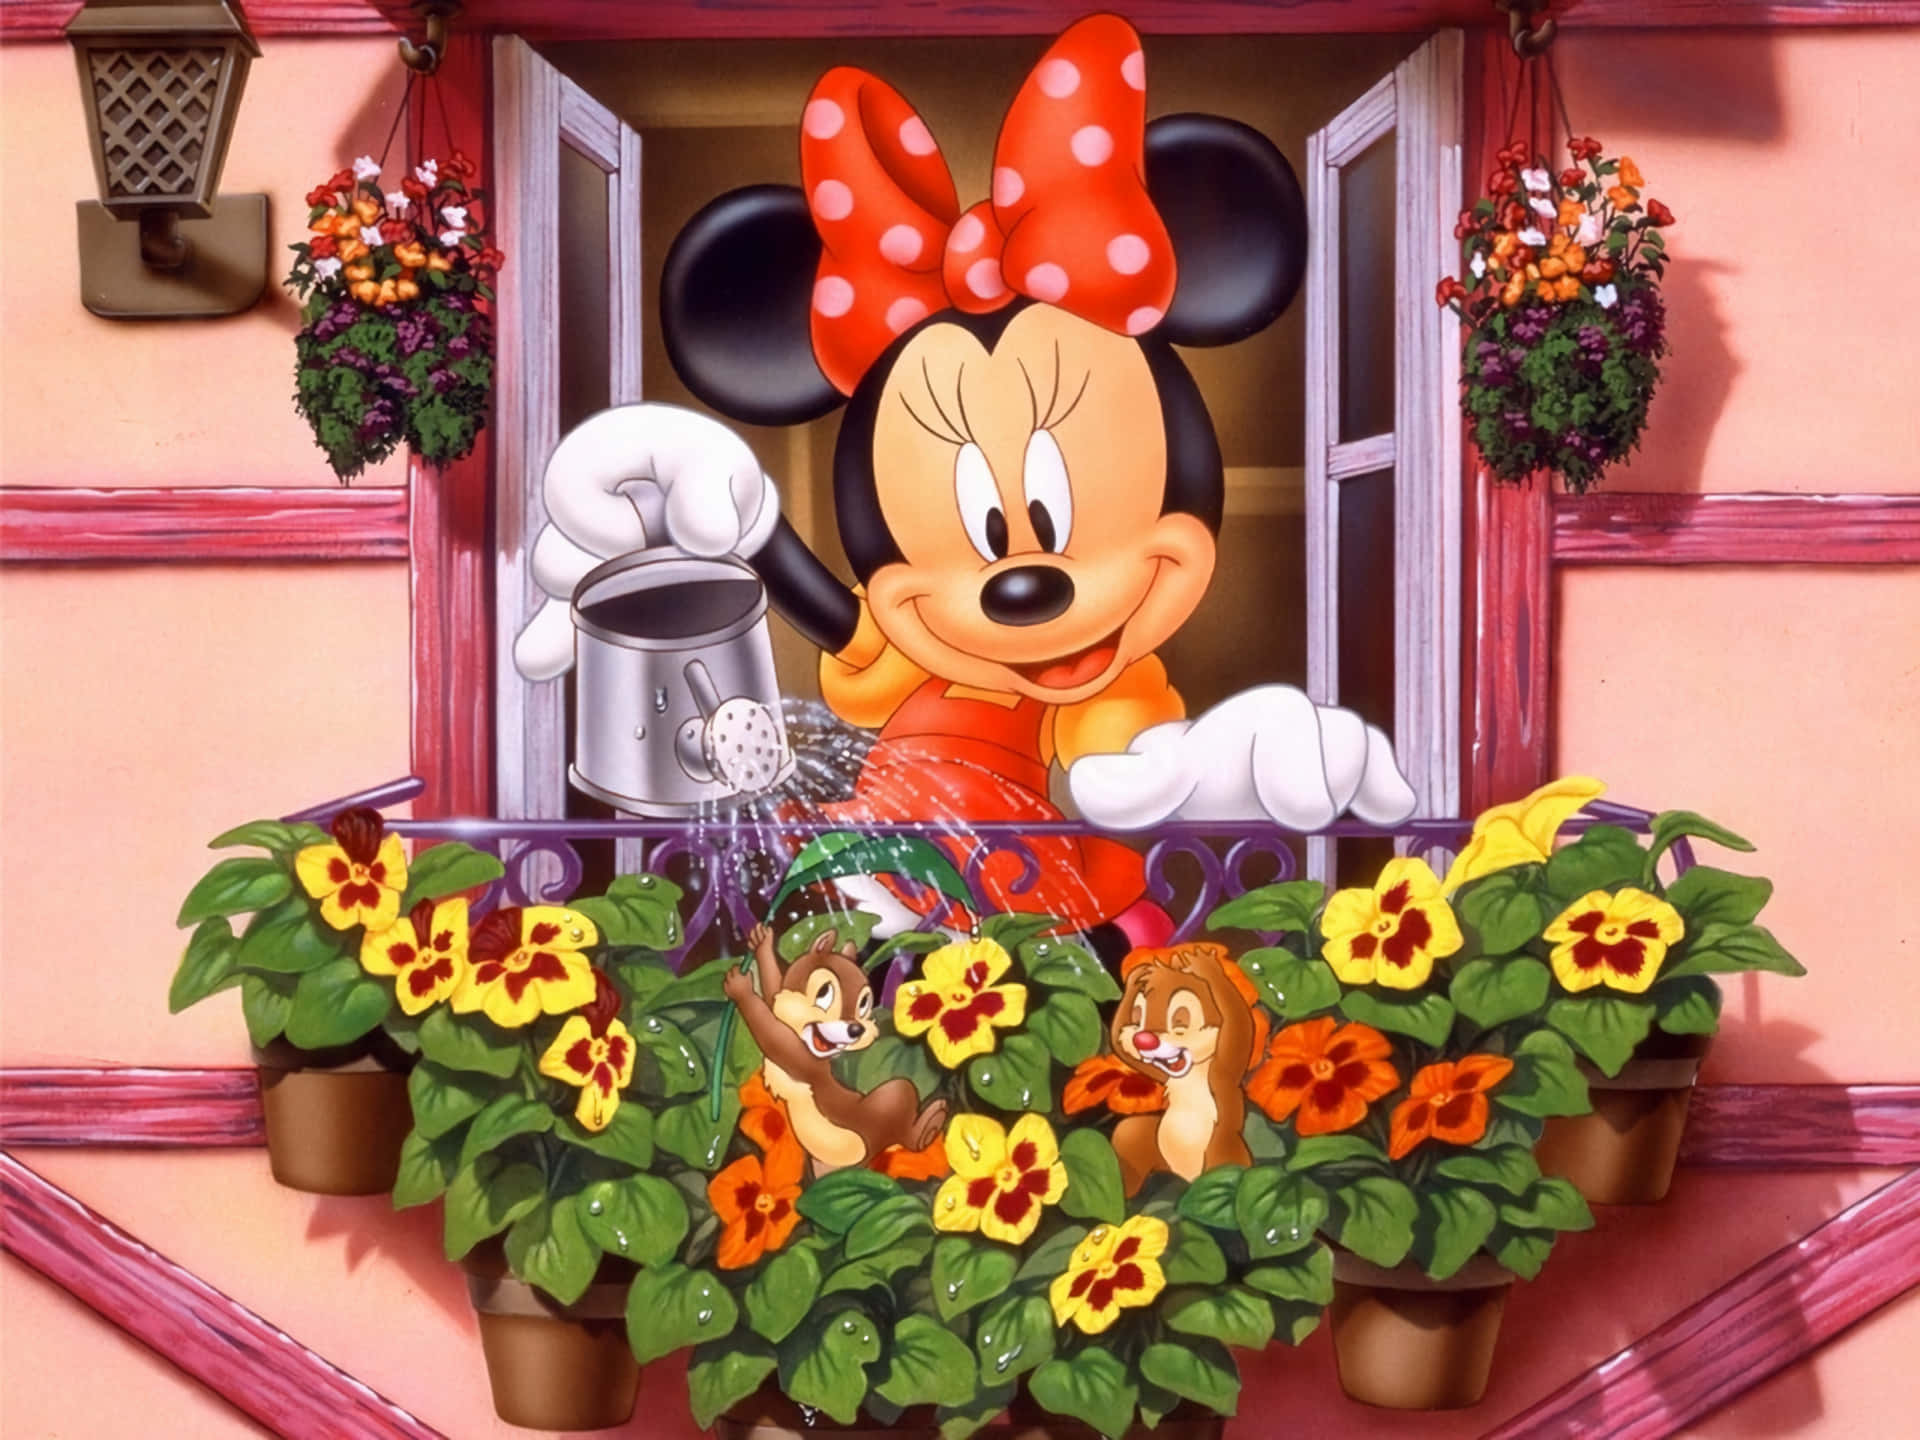 ¡conocea Minnie Mouse - ¡un Símbolo De Diversión Y Amistad!